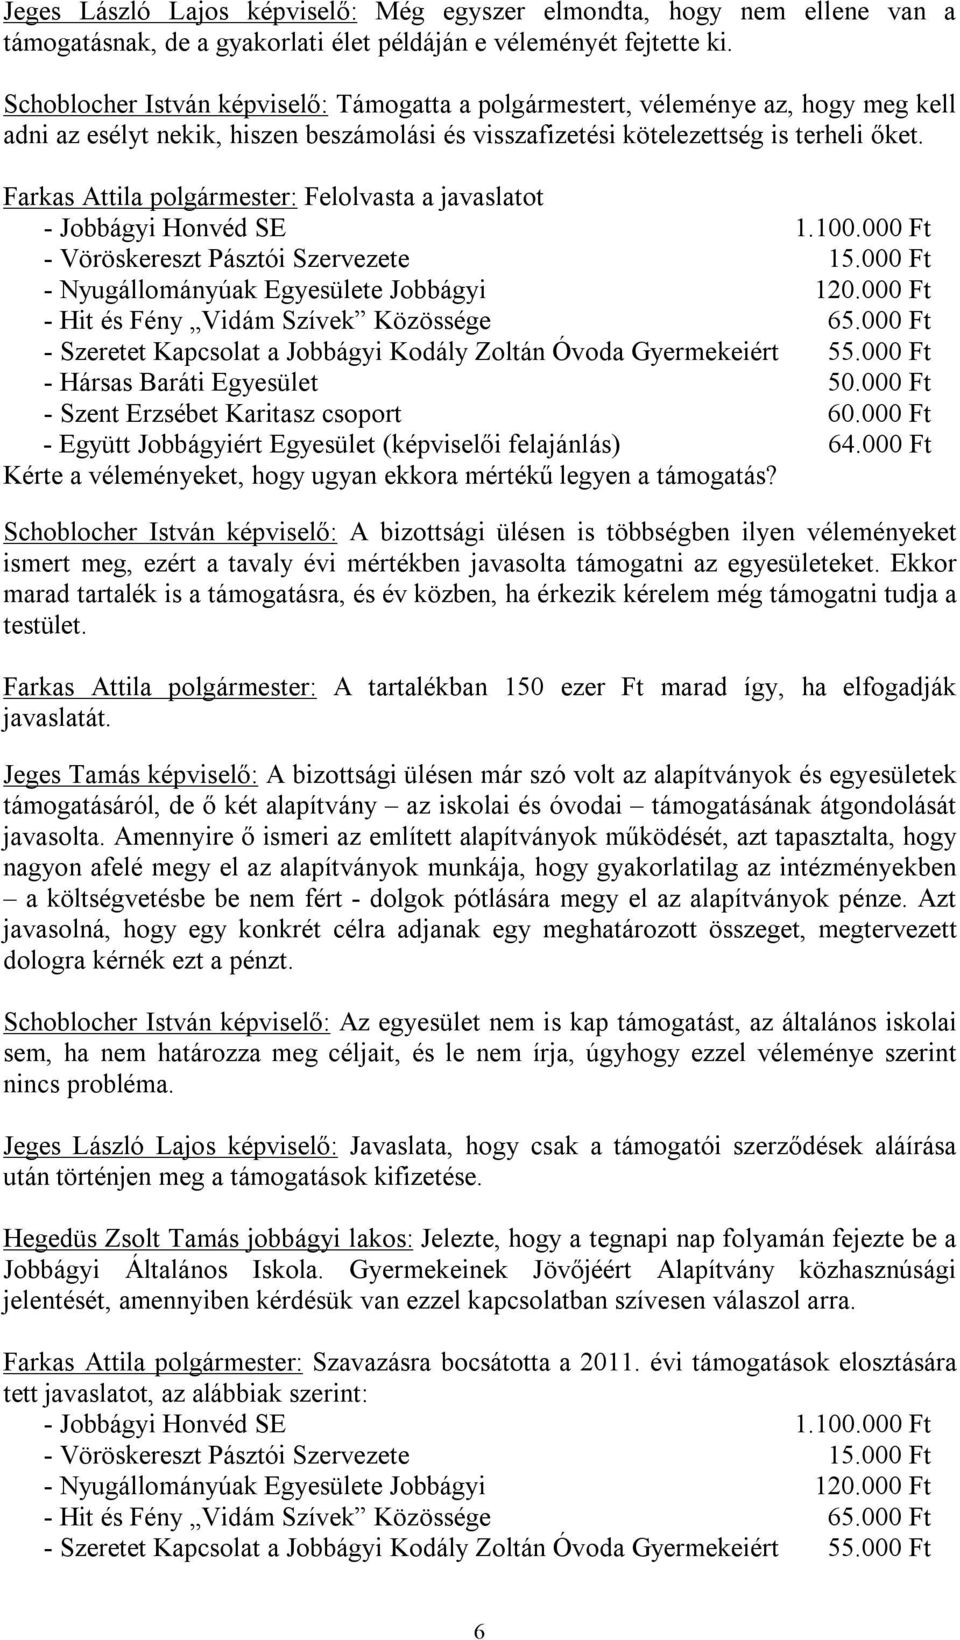 Farkas Attila polgármester: Felolvasta a javaslatot - Jobbágyi Honvéd SE 1.100.000 Ft - Vöröskereszt Pásztói Szervezete 15.000 Ft - Nyugállományúak Egyesülete Jobbágyi 120.